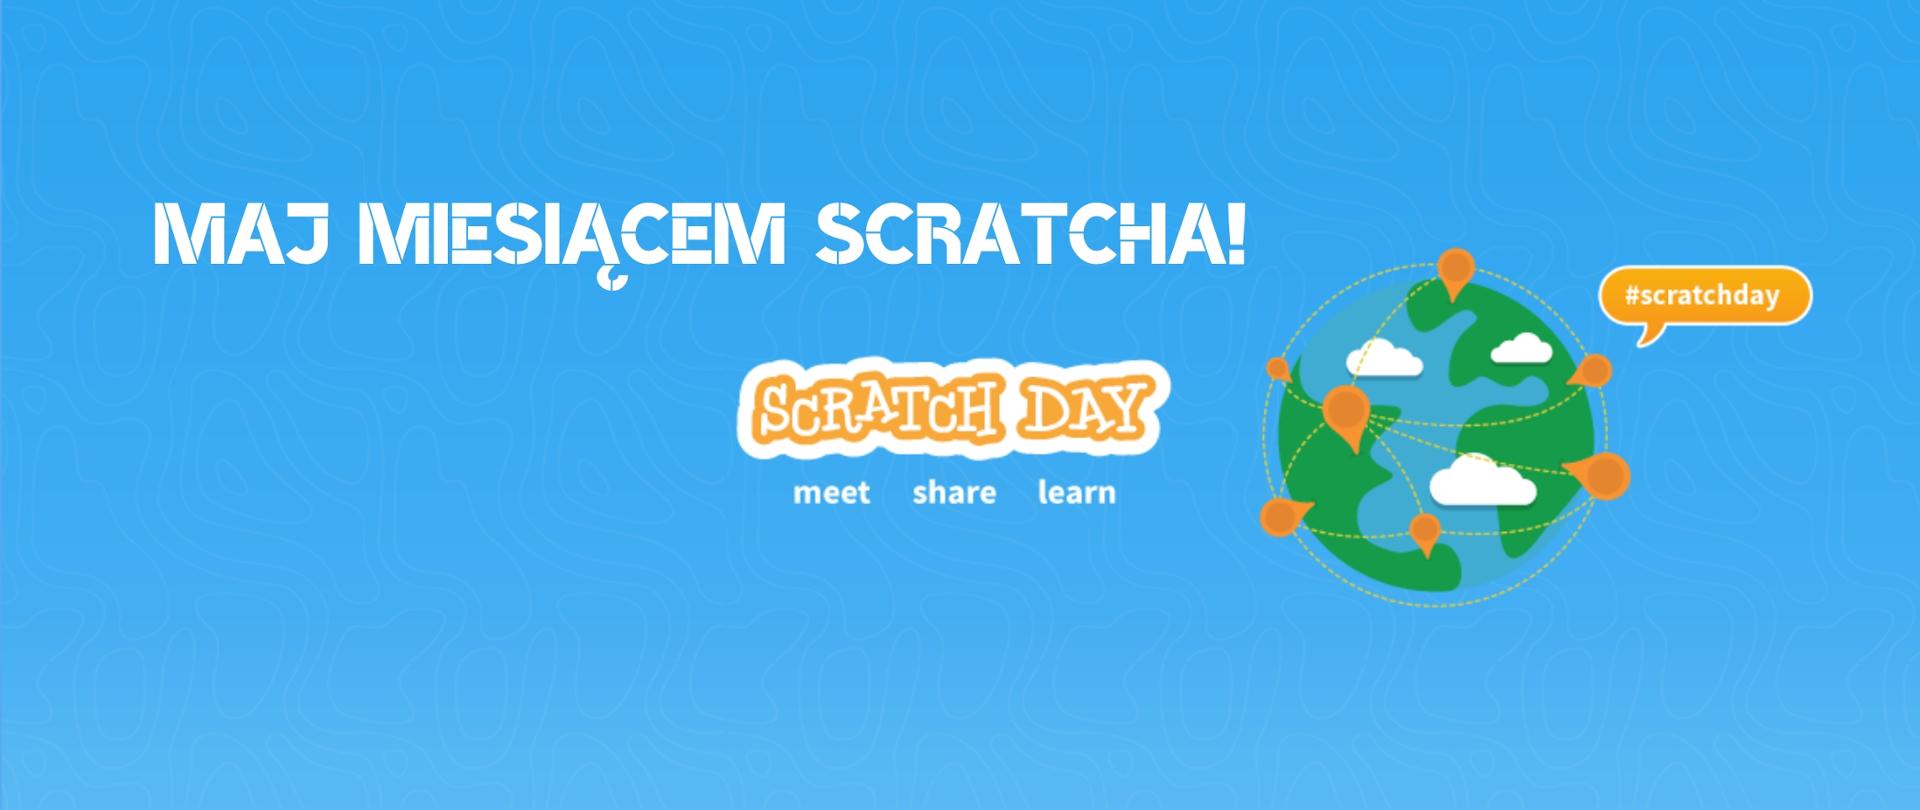 Na zdjęciu widać z prawej strony planetę ziemię. Na środku obrazka widnienie napis : Maj miesiącem scratcha! Scratch day. Meet, share, learn. 